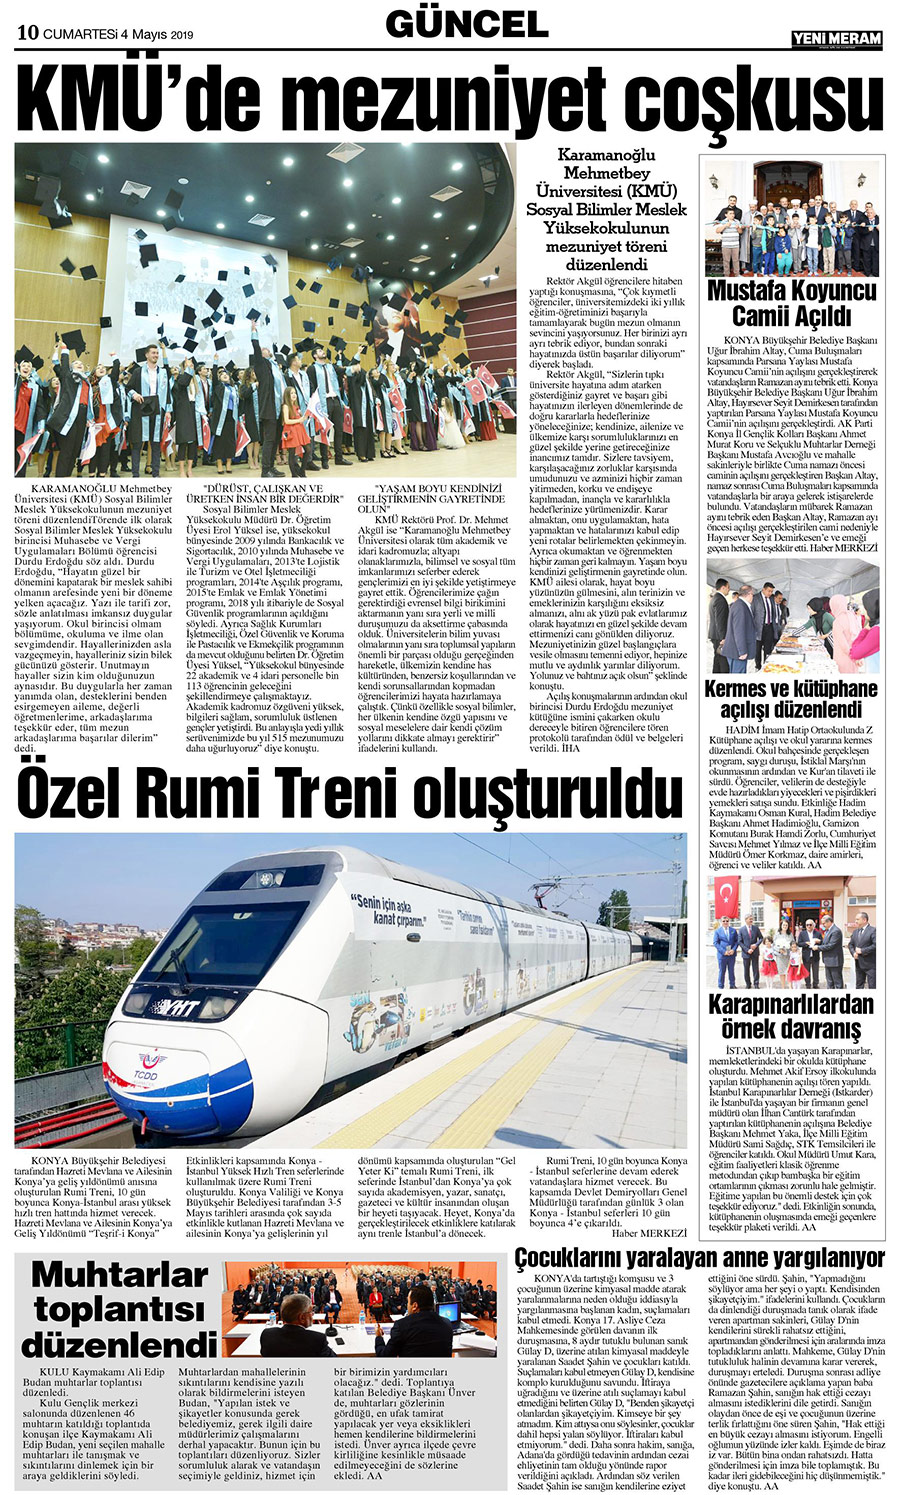 4 Mayıs 2019 Yeni Meram Gazetesi